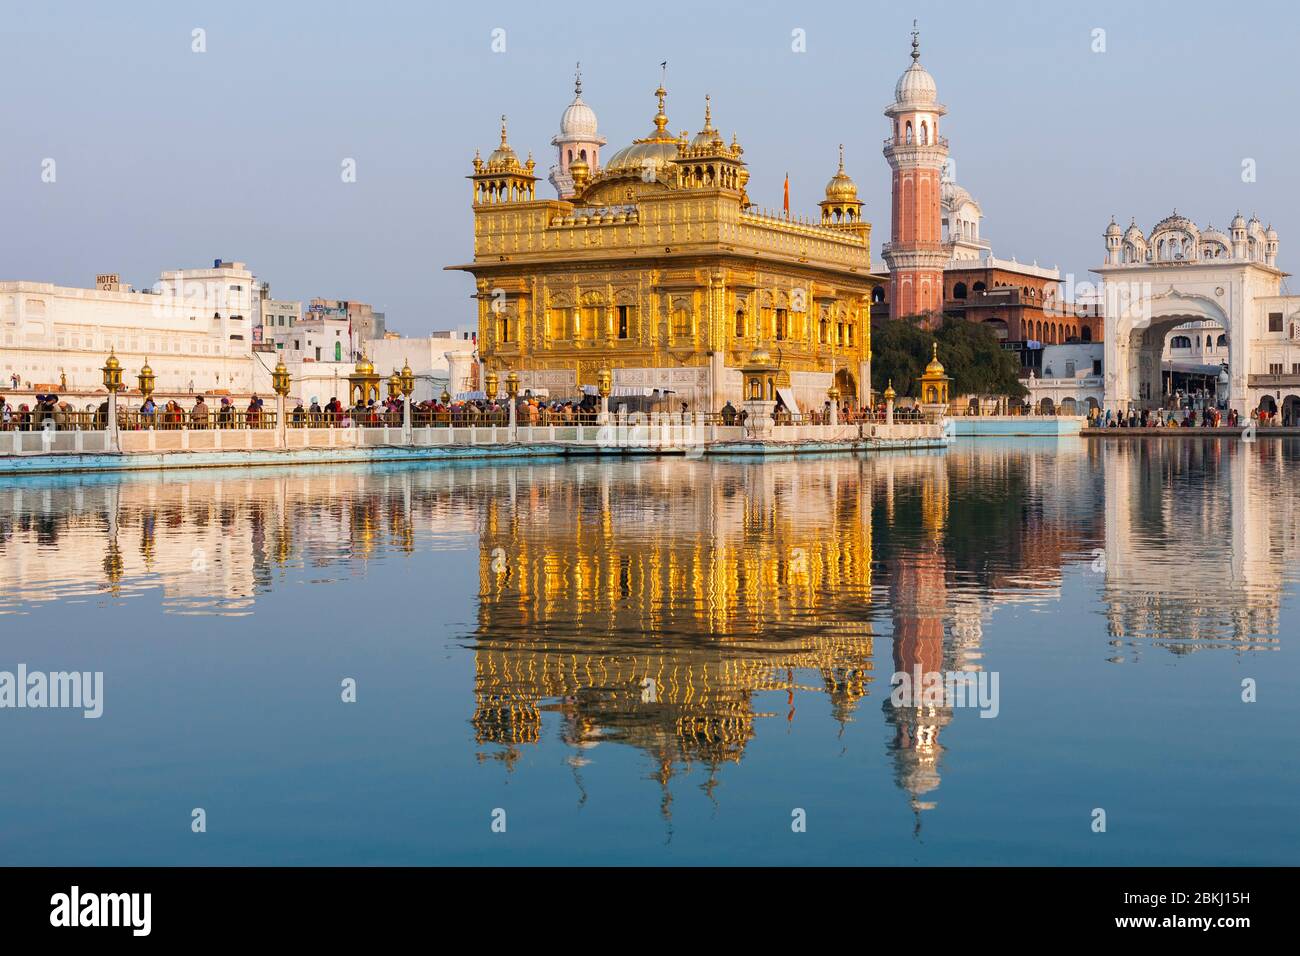 Indien, Punjab Staat, Amritsar, Harmandir Sahib, Goldener Tempel unter der Sonne, mit Reflexion im Nektar Becken, Amrit Sarovar, heiliger Ort des Sikhismus Stockfoto